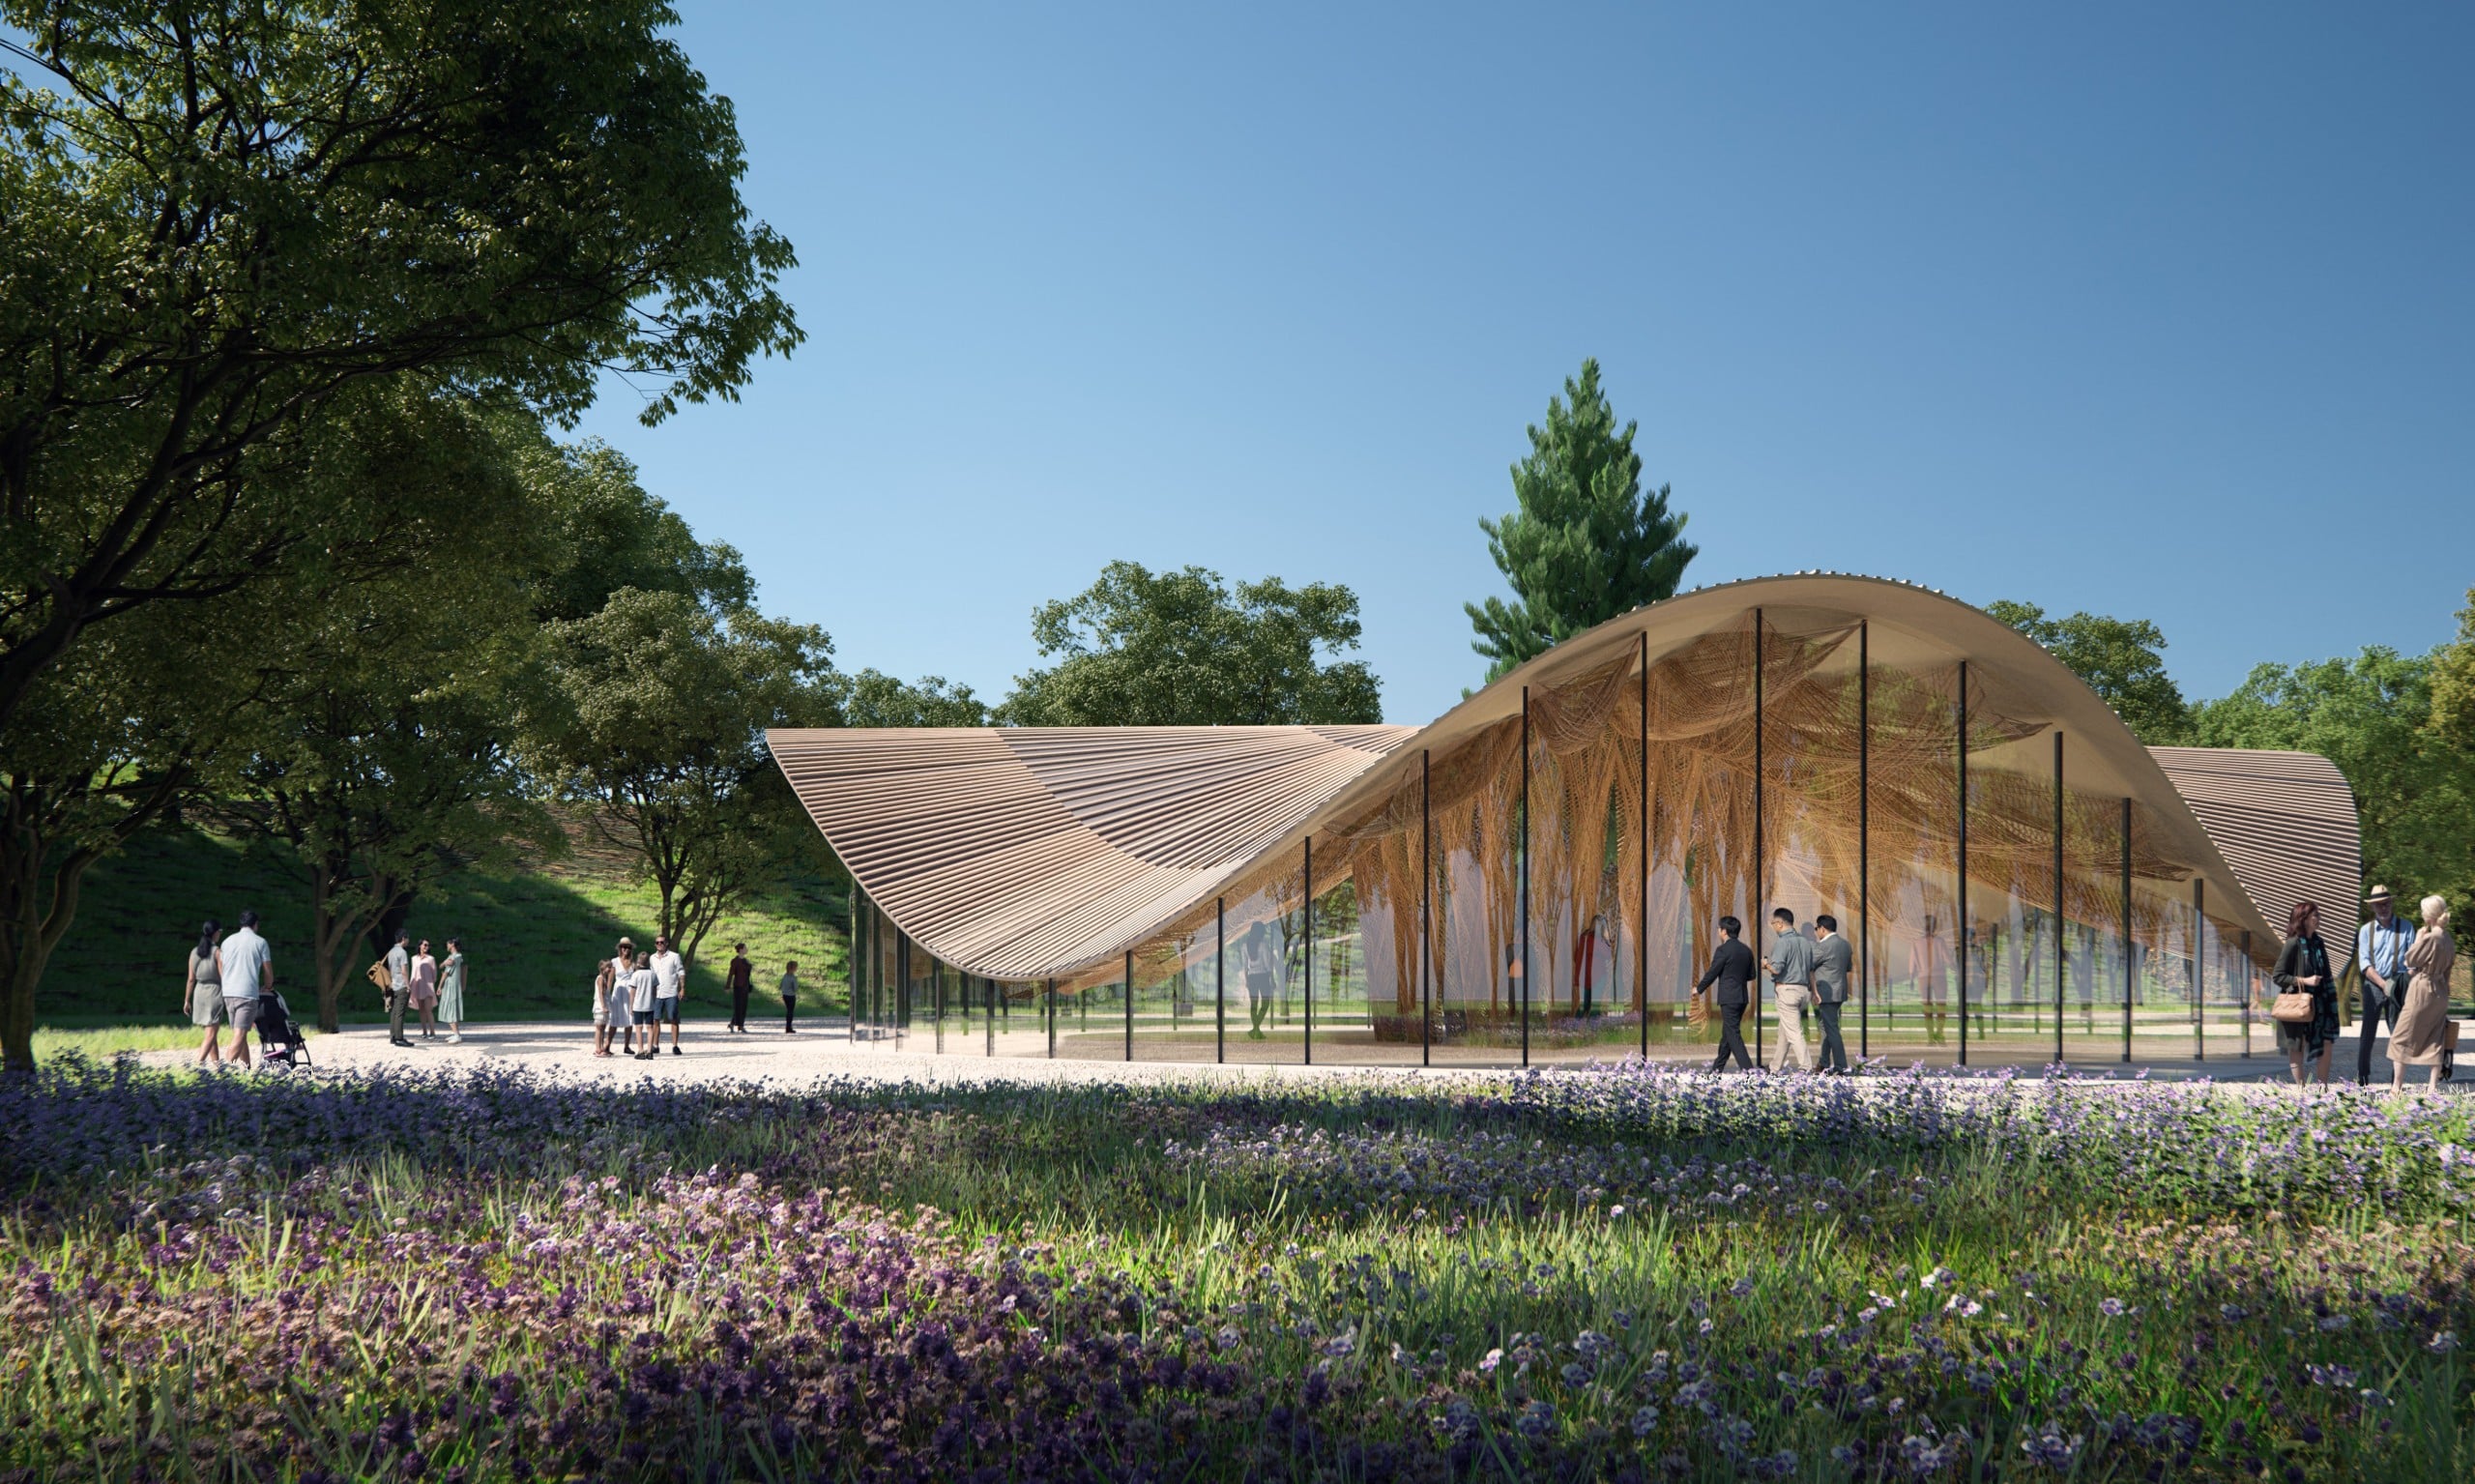 Dieser Holz-Naturfaser-Pavillon entsteht im Zuge der Landesgartenschau Wangen .credits: Universität Stuttgart; Janusch - the visual collective